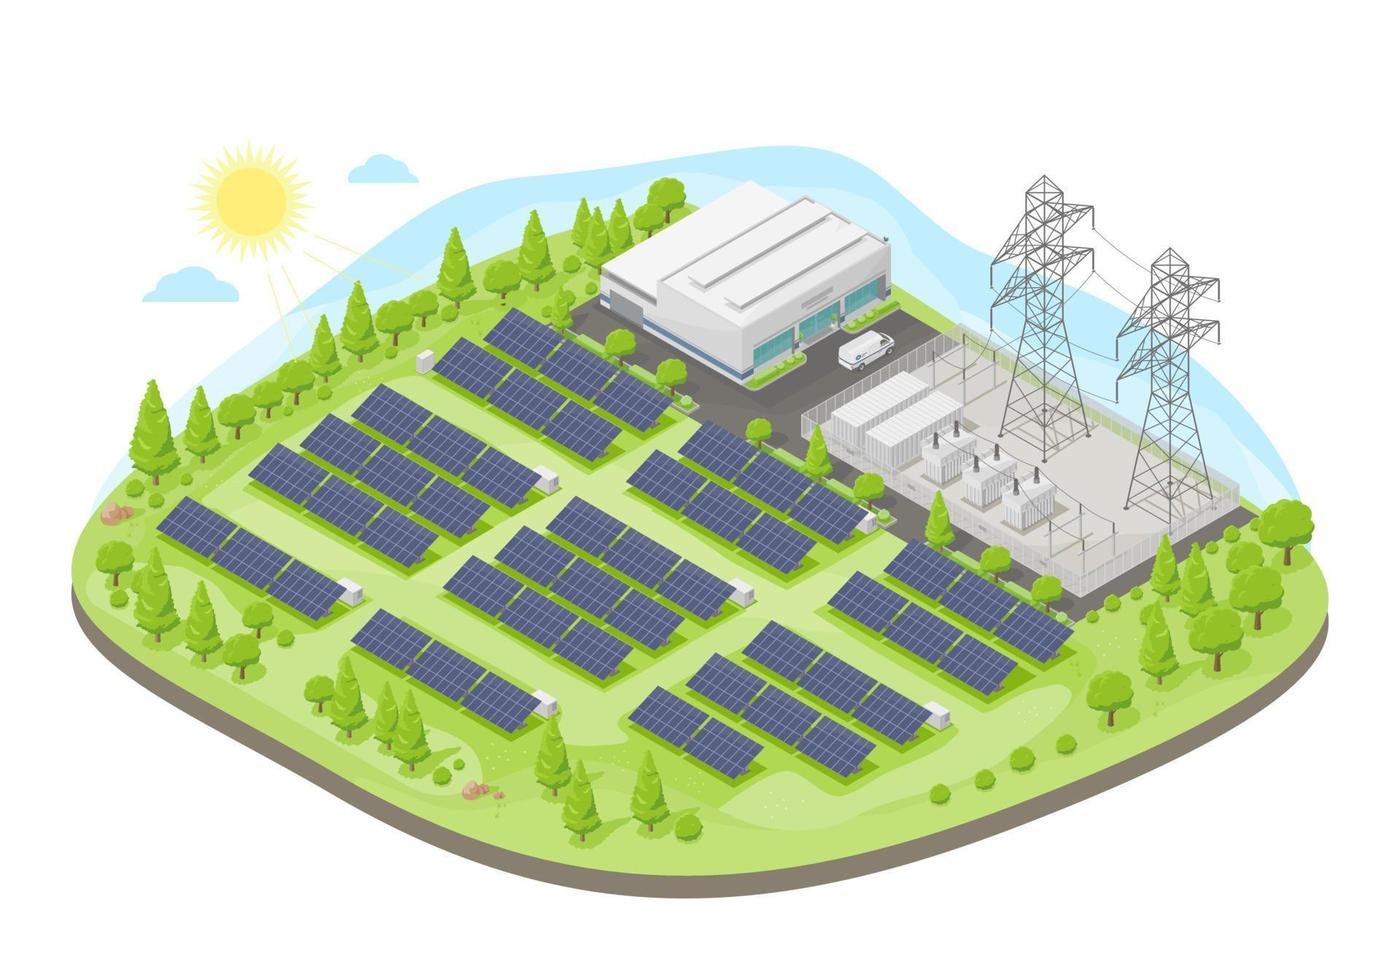 centrale électrique de ferme solaire avec cellule solaire énergie verte concept de centrale électrique écologie électricité dans la nature vecteur isométrique isolé